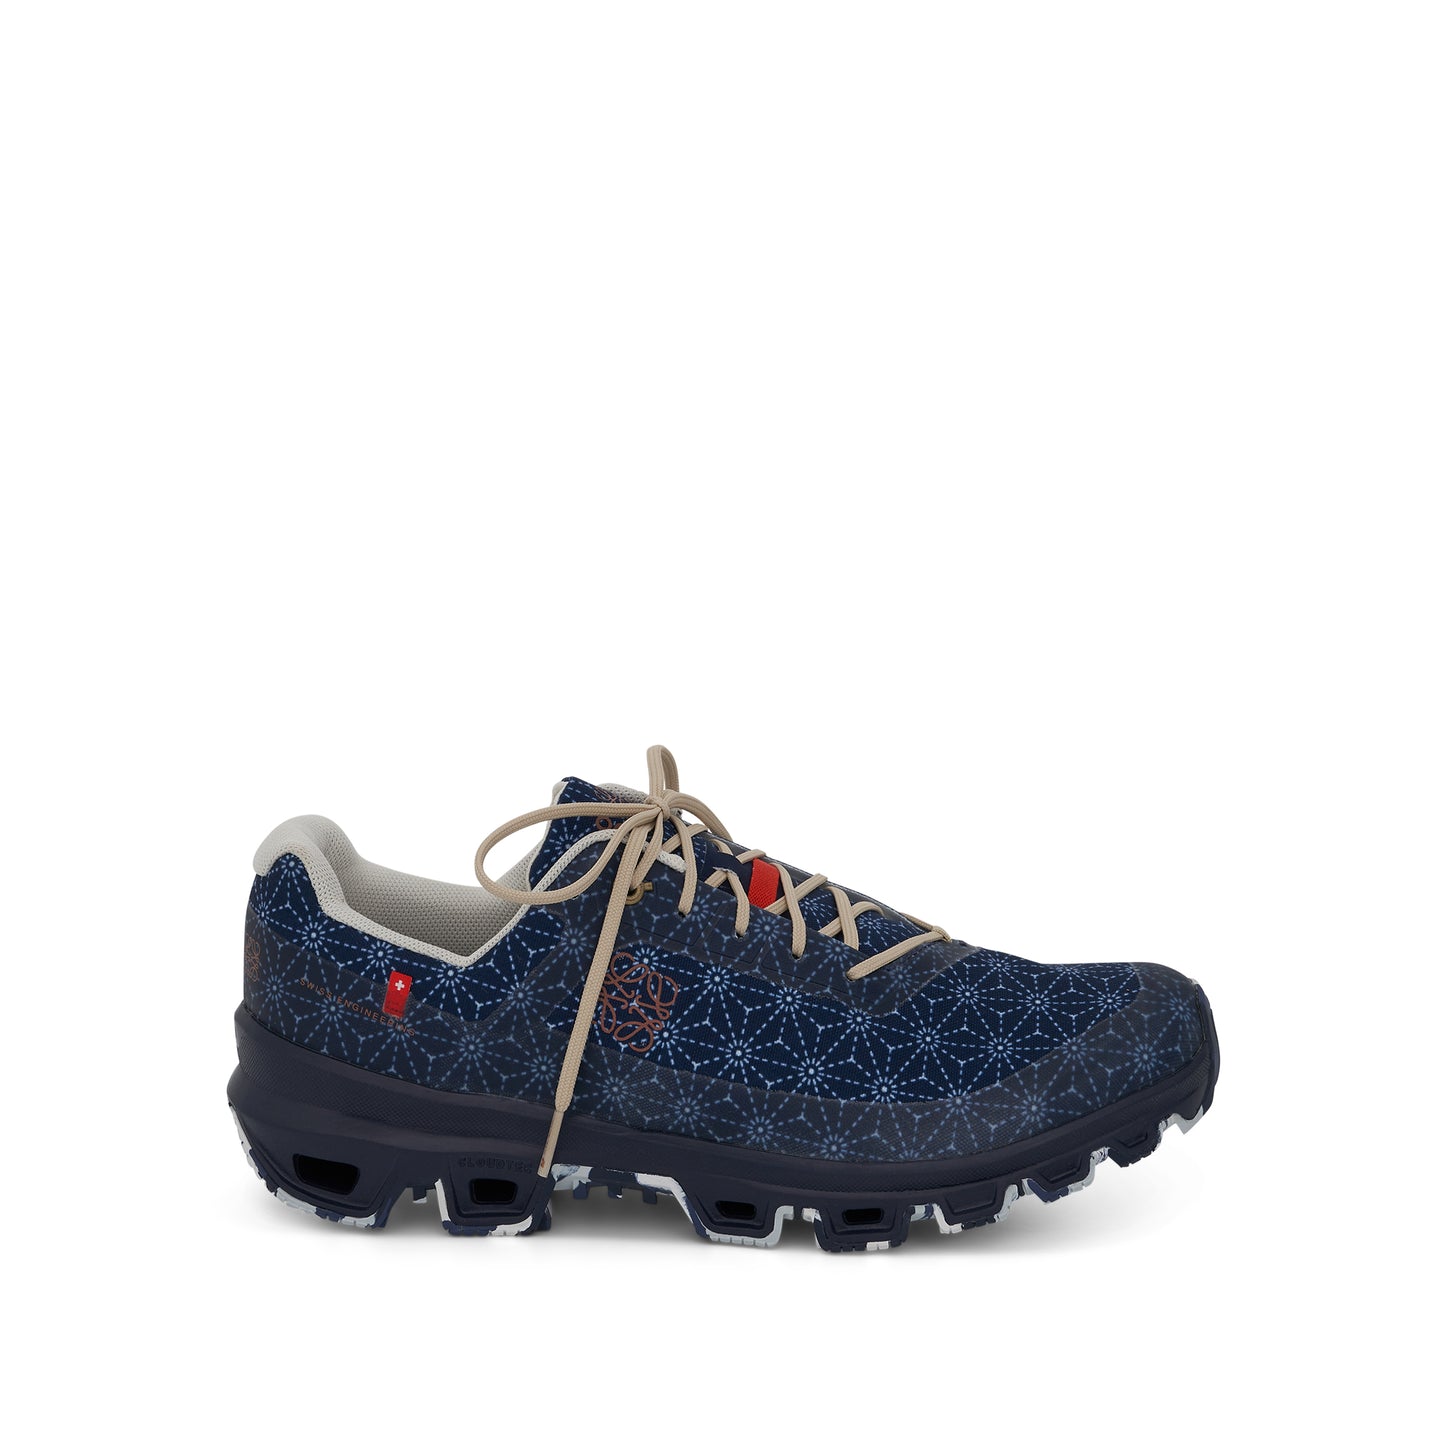 Loewe x ON Cloudventure Sneaker in Space Blue